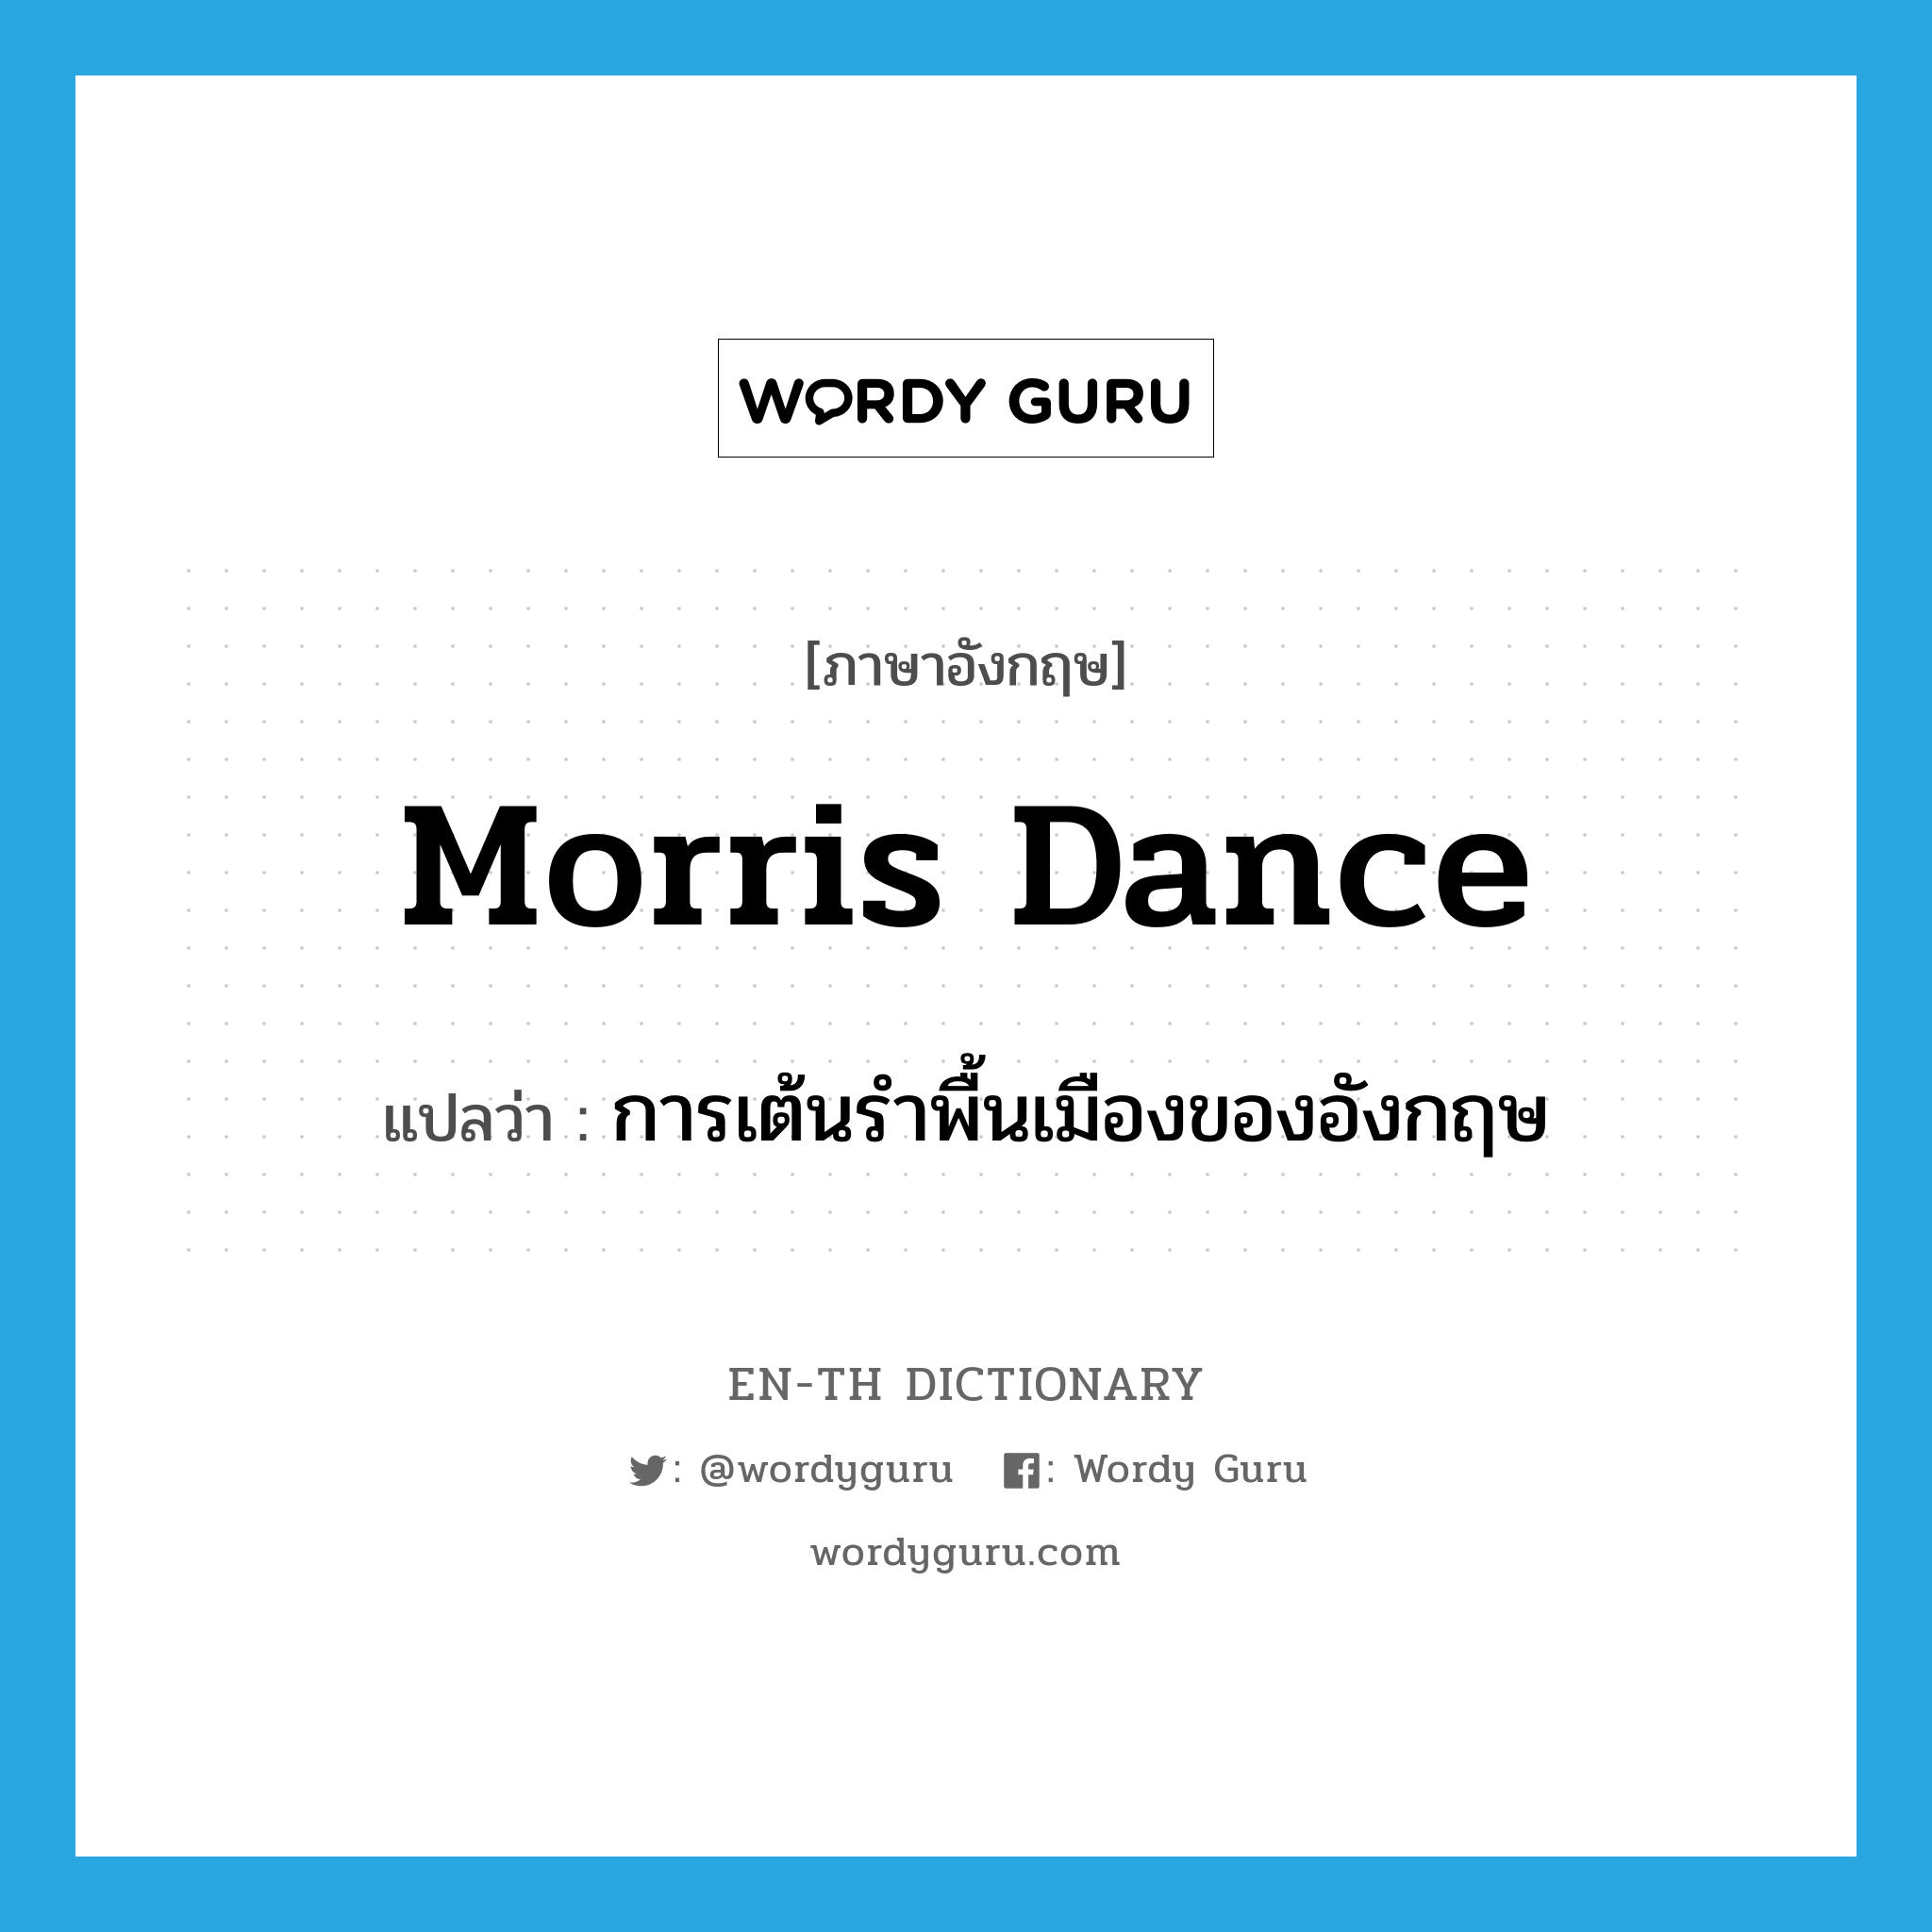 การเต้นรำพื้นเมืองของอังกฤษ ภาษาอังกฤษ?, คำศัพท์ภาษาอังกฤษ การเต้นรำพื้นเมืองของอังกฤษ แปลว่า morris dance ประเภท N หมวด N